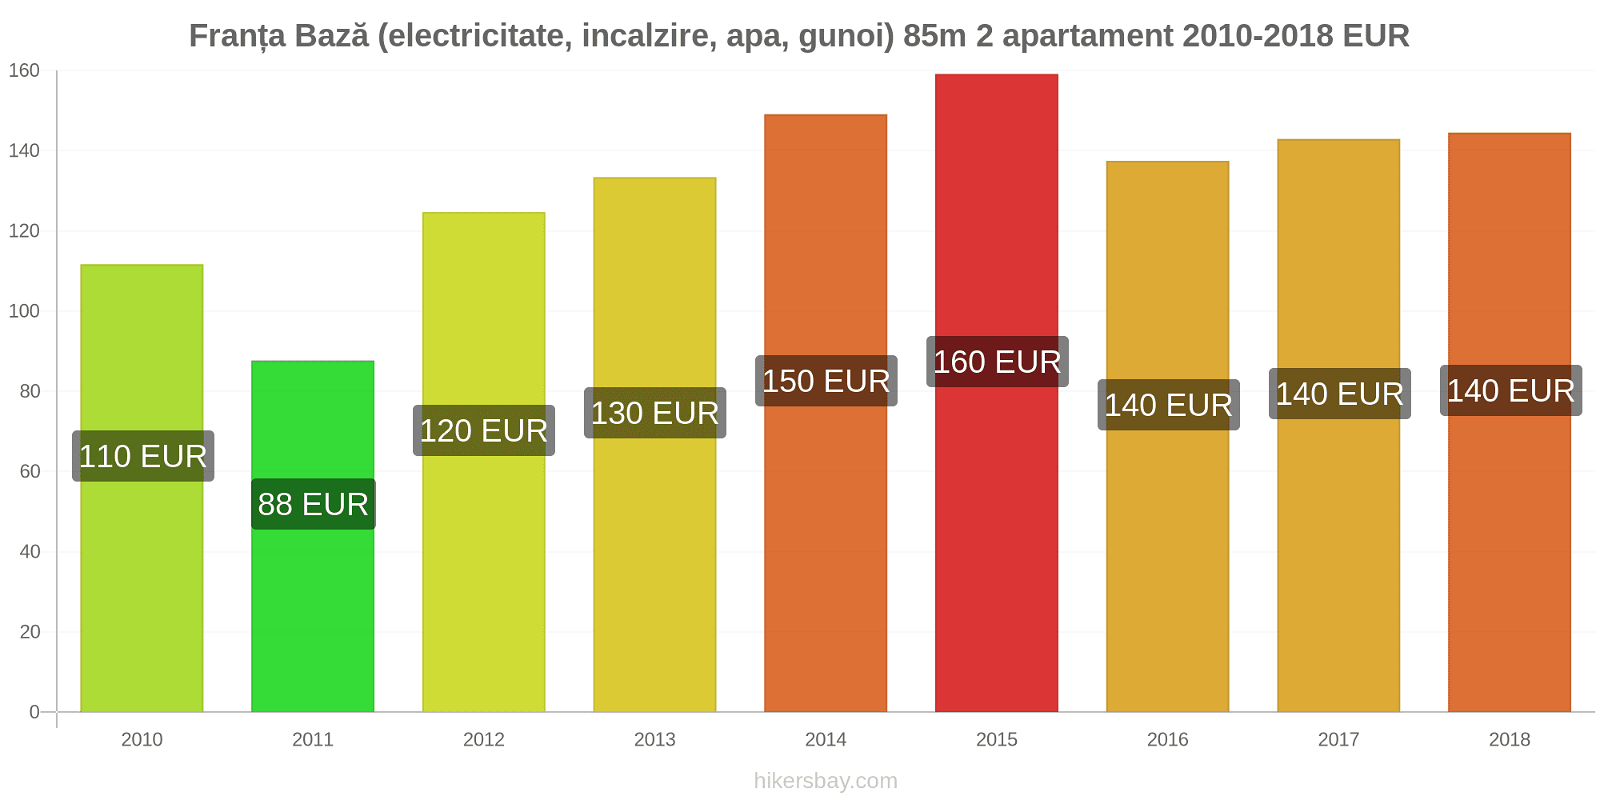 Franța schimbări de prețuri Utilități (electricitate, încălzire, apă, gunoi) pentru un apartament de 85m2 hikersbay.com